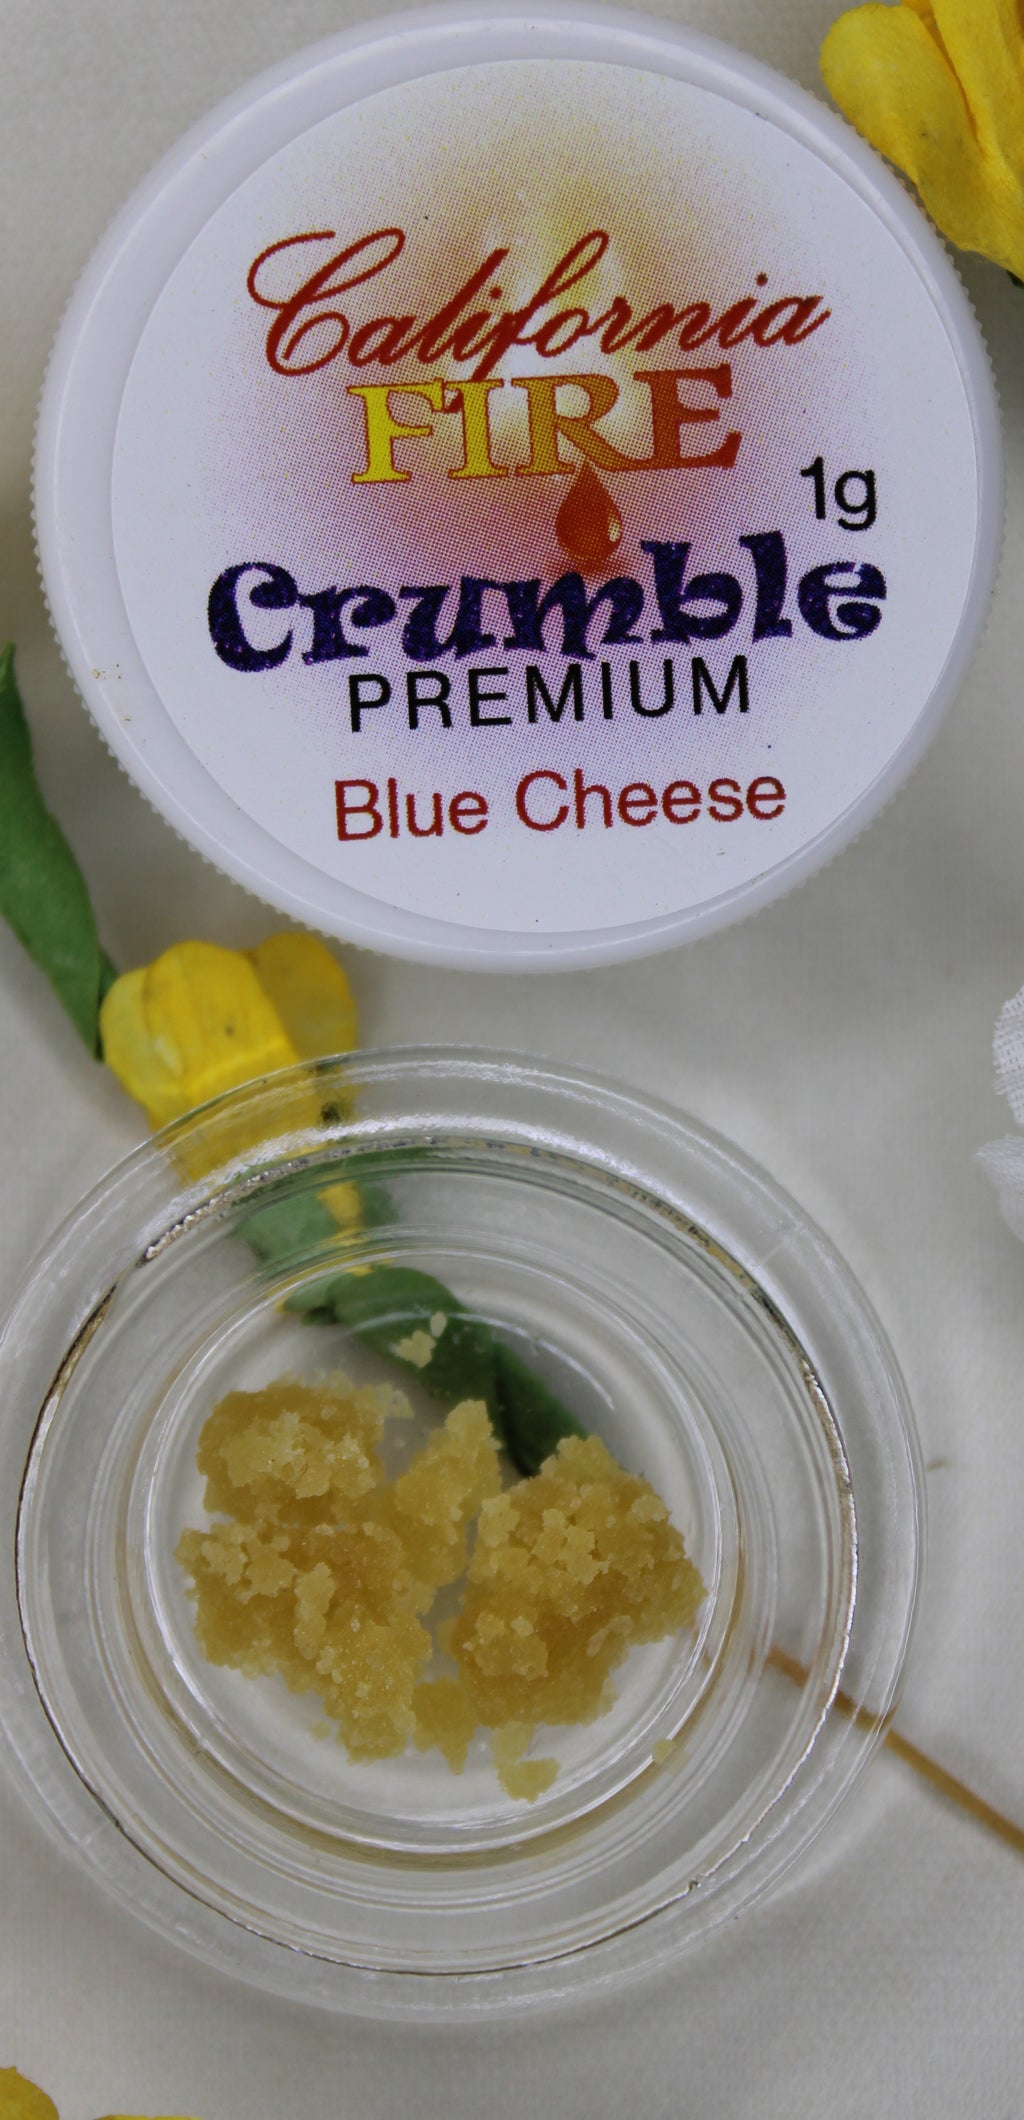 California Fire Premium Crumble "Blue Cheese" (1g)